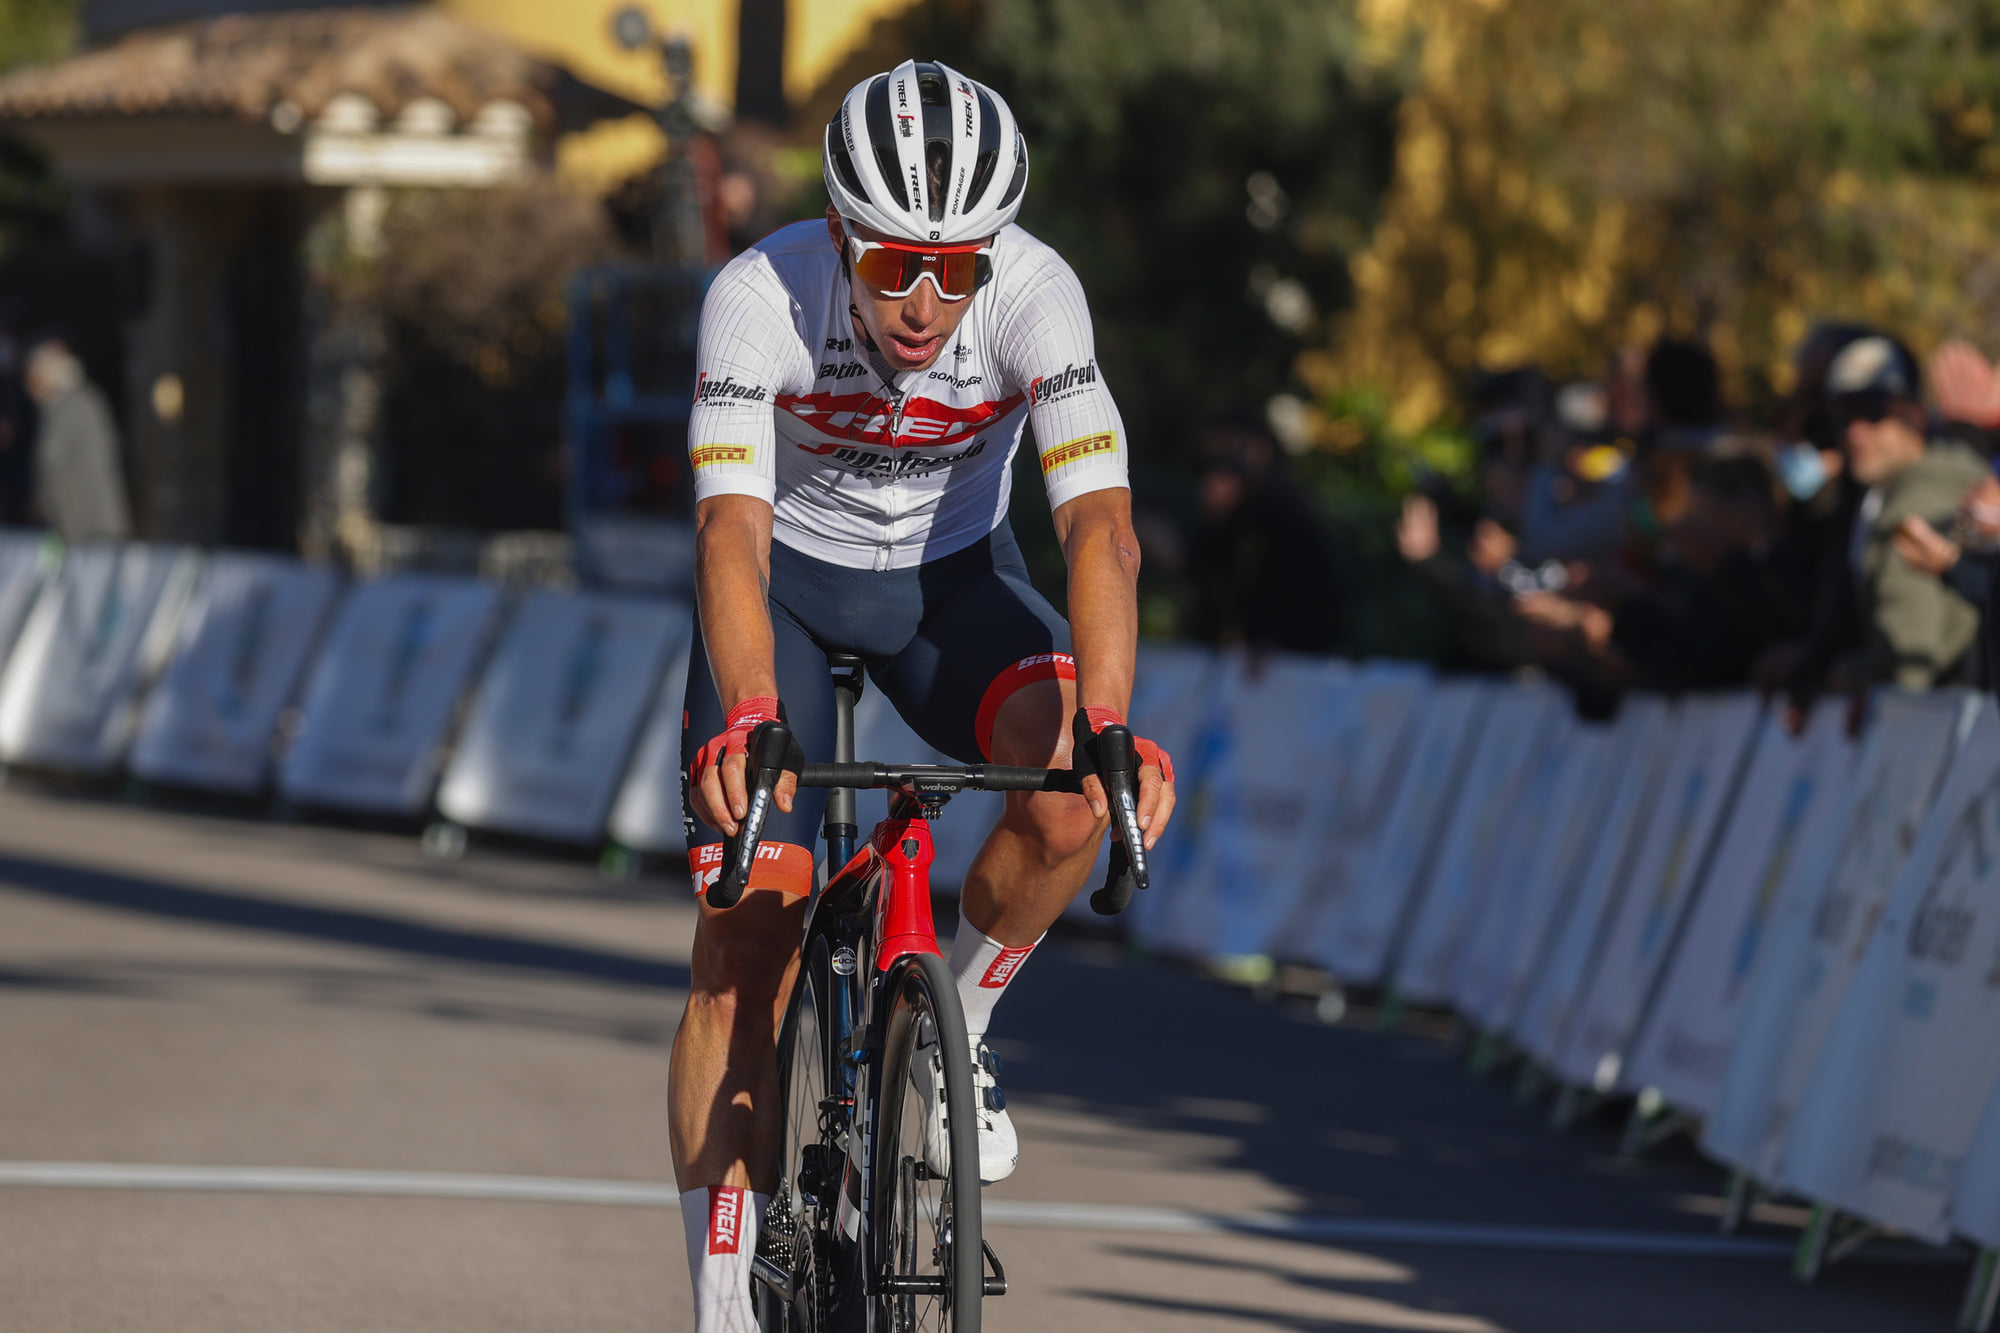 Cyclisme: Une bronchite empêche Simon Pellaud de prendre part au Tour de Romandie